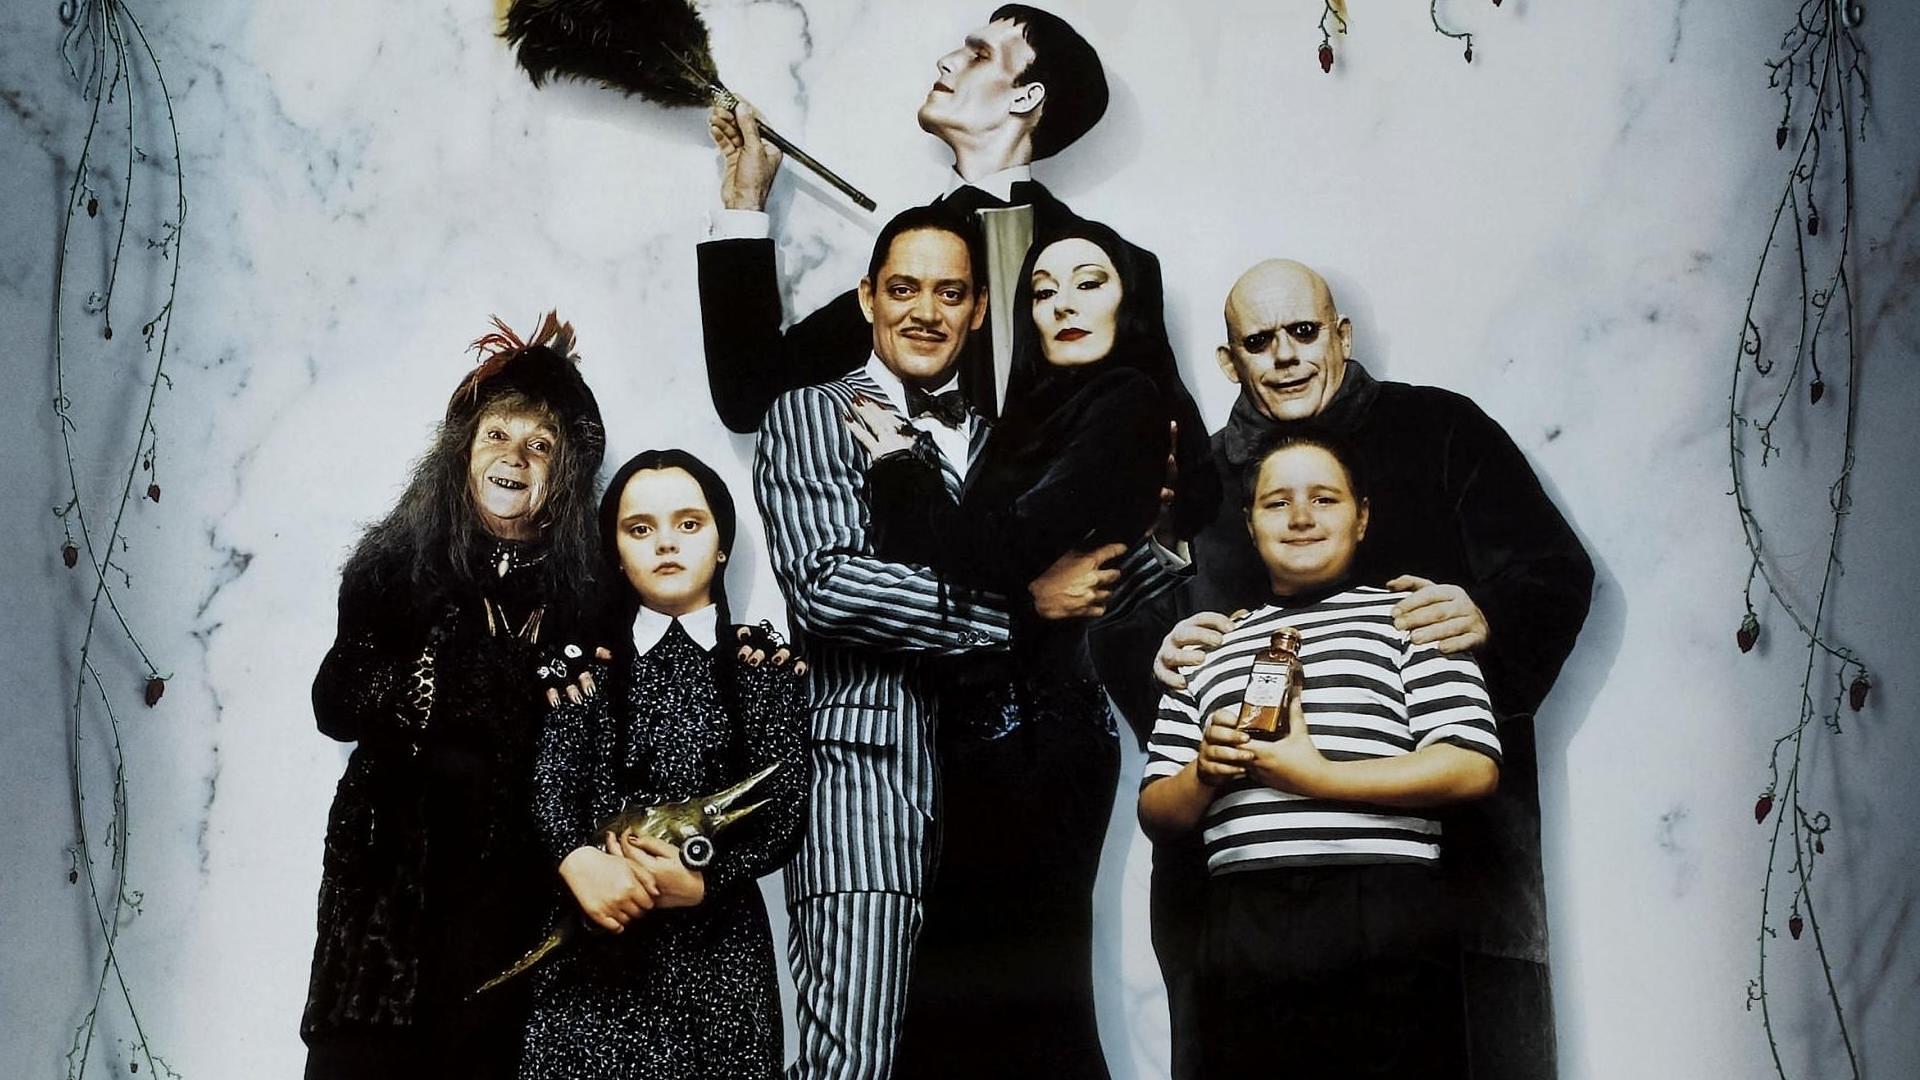 La Famille Addams & Les valeurs de la Famille Addams : excentricité et  rires assurés! - Éklectik Média